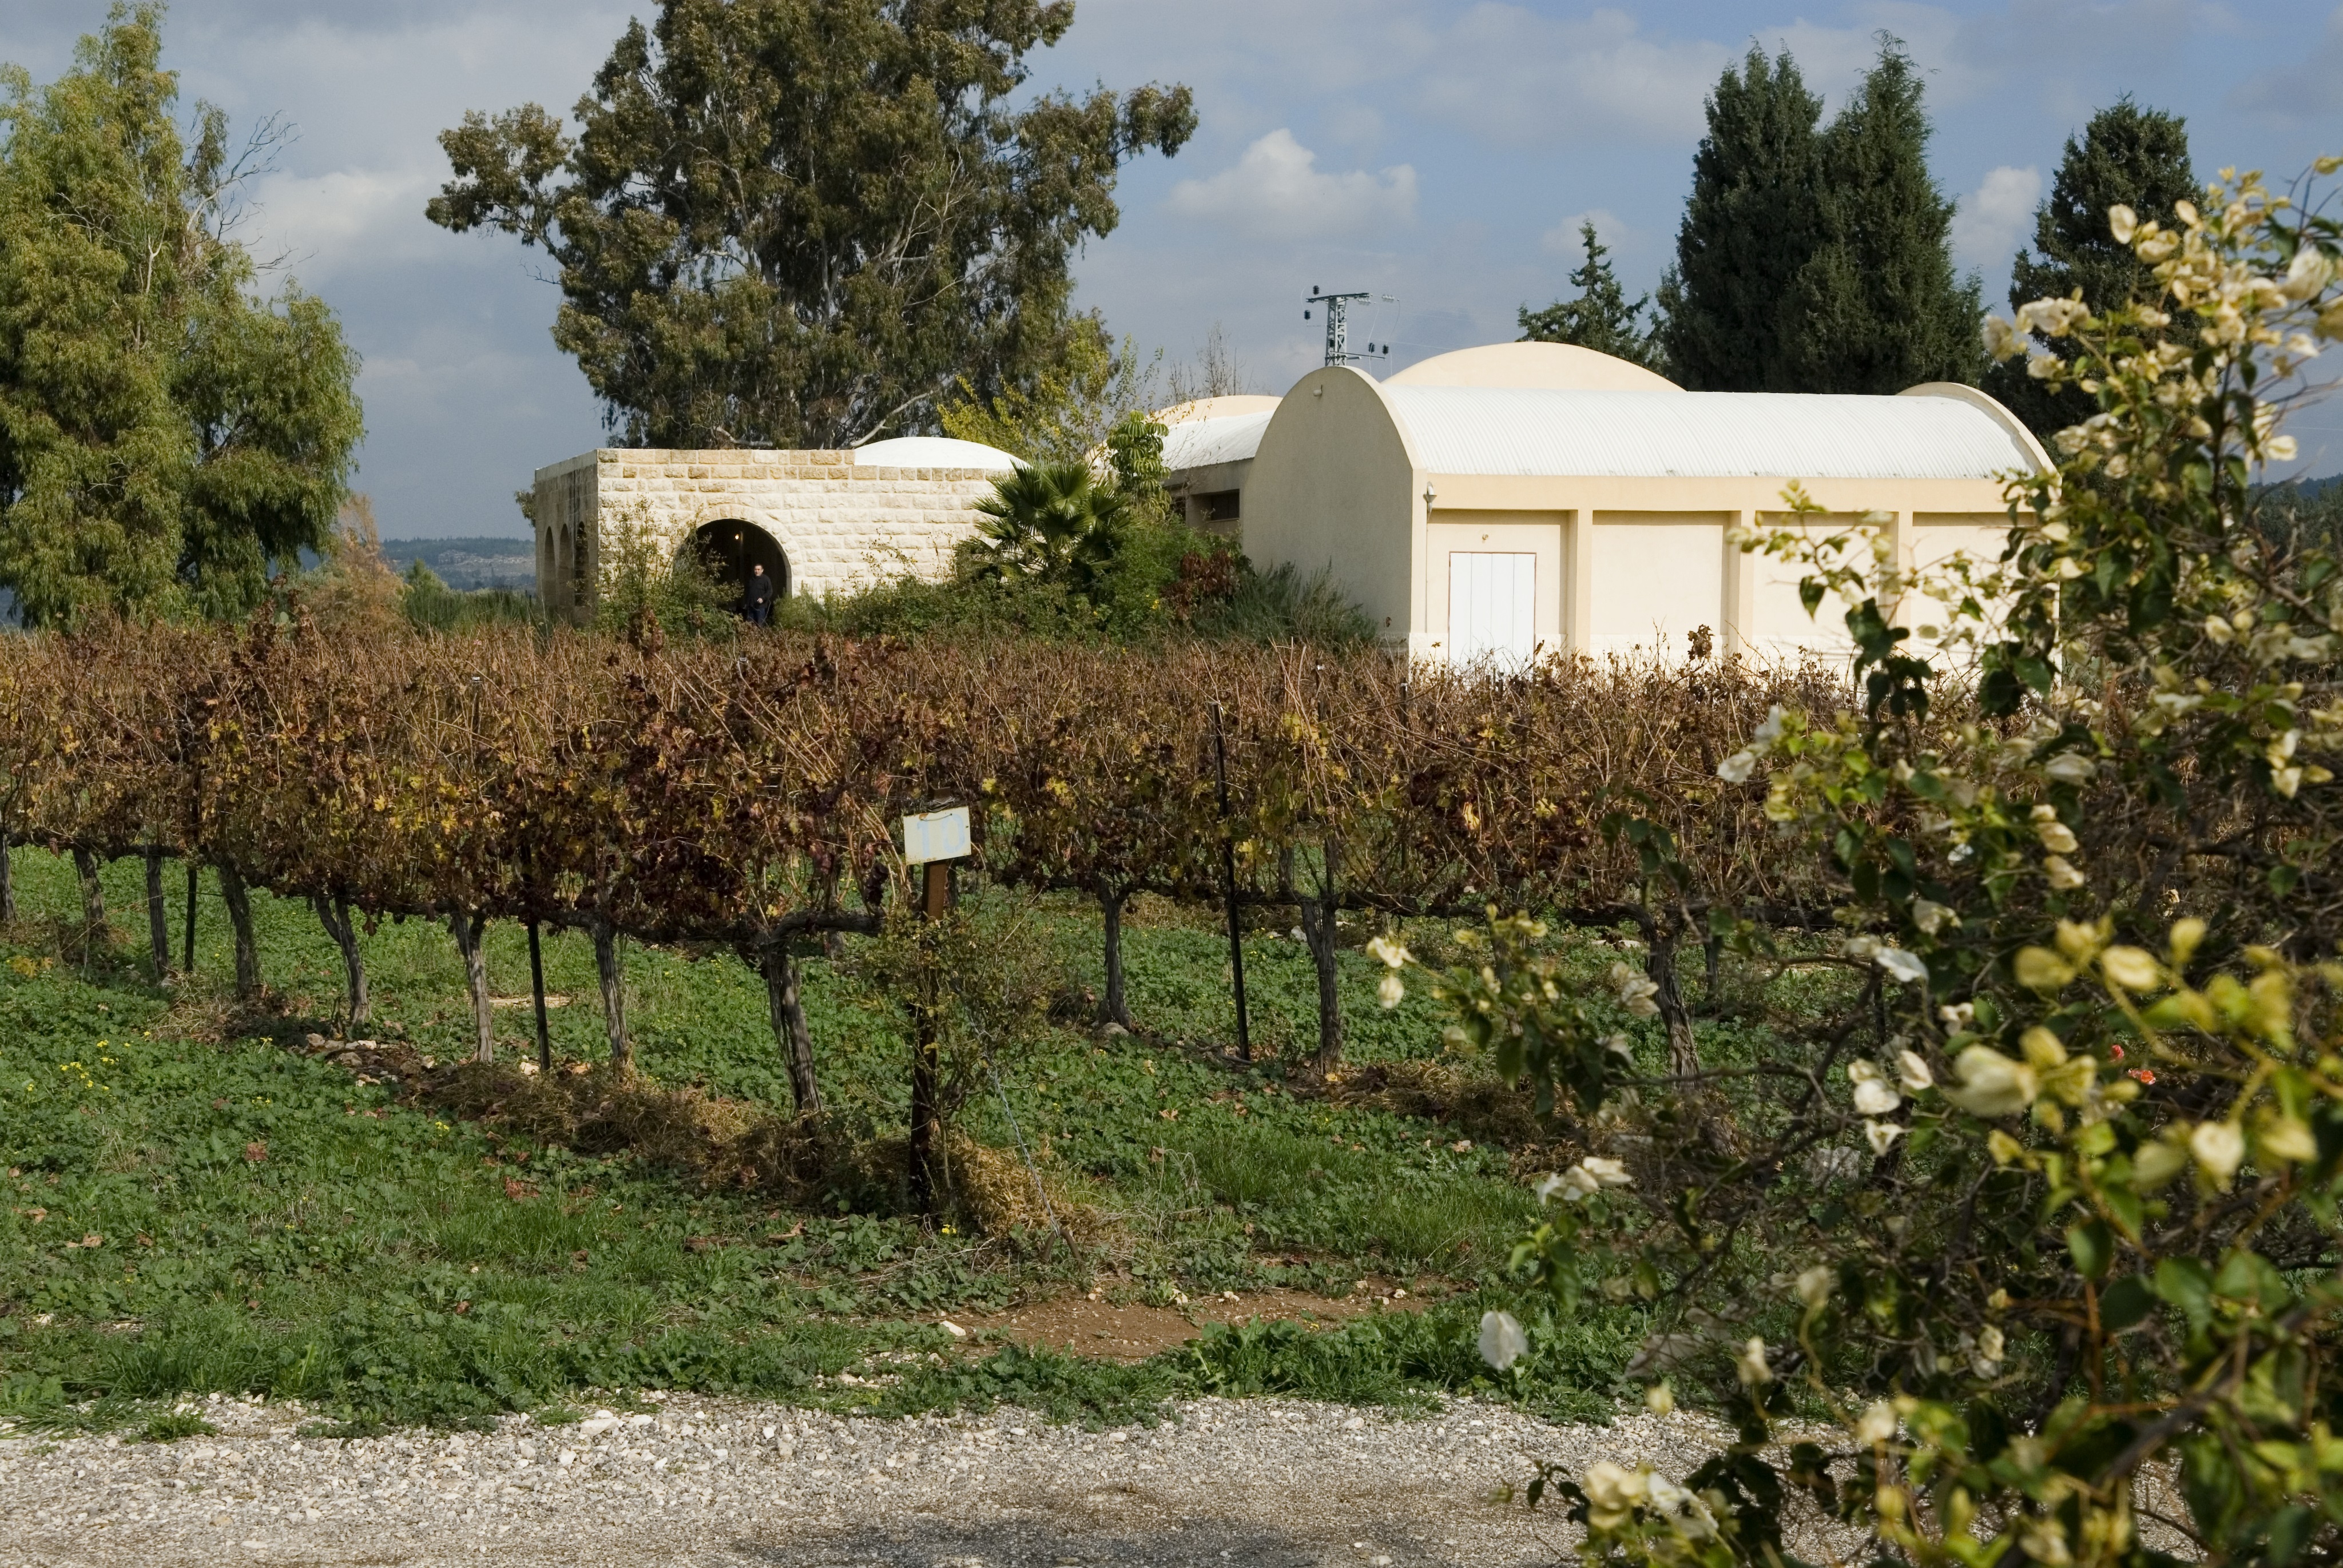 Clos de Gat - Har'el - Cabernet Sauvignon  Vin d'Israël Rouge 2013